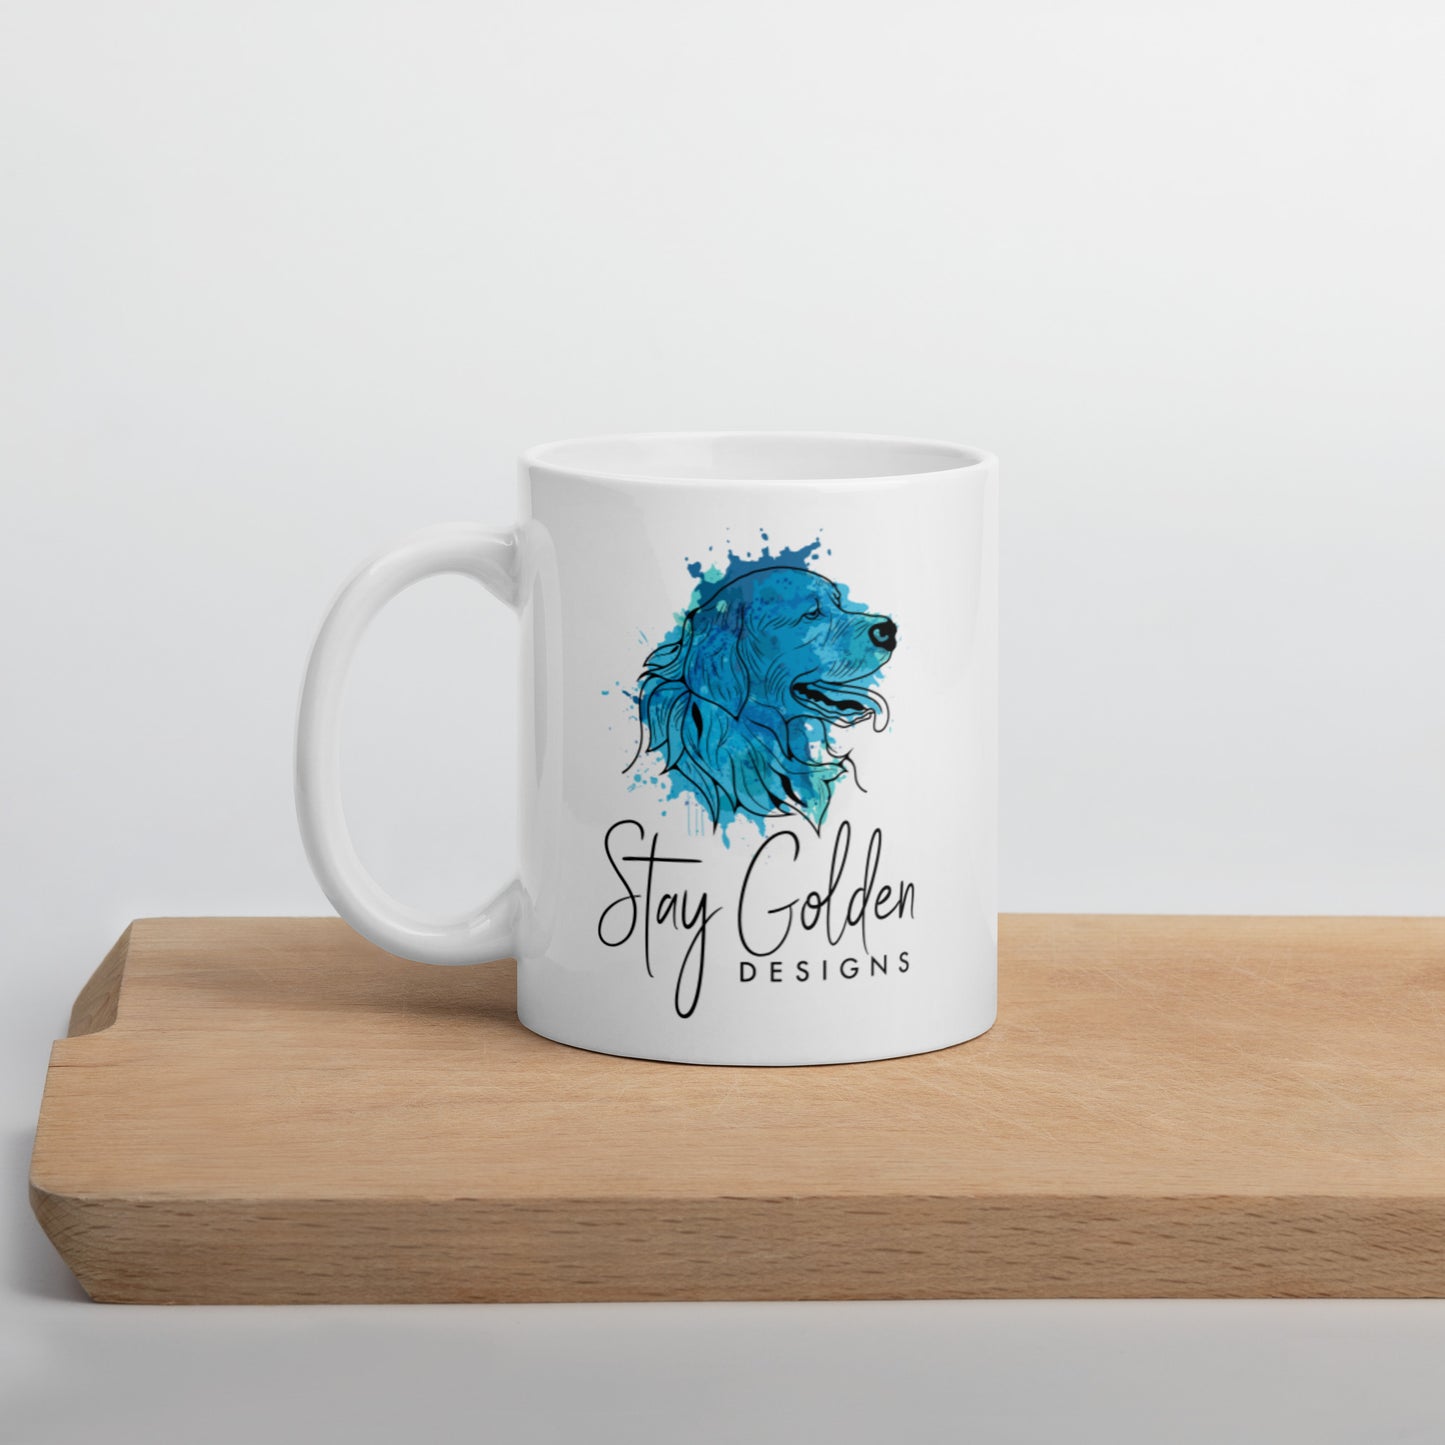 Stay Golden- White glossy mug